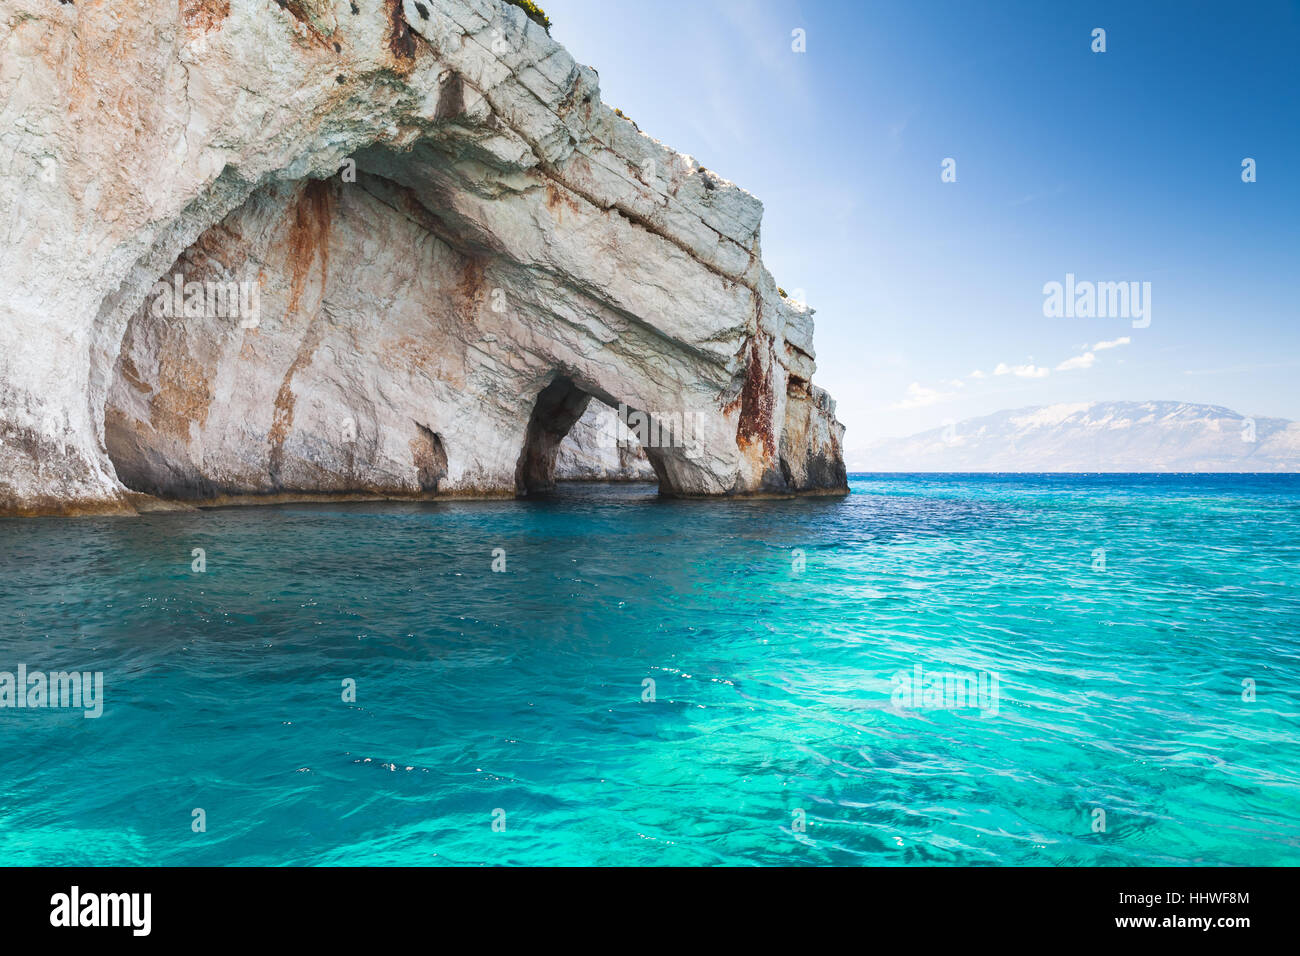 Grottes Blue, roches côtières de l'île grecque de Zakynthos avec voûtes en pierre naturelle, destination touristique populaire Banque D'Images